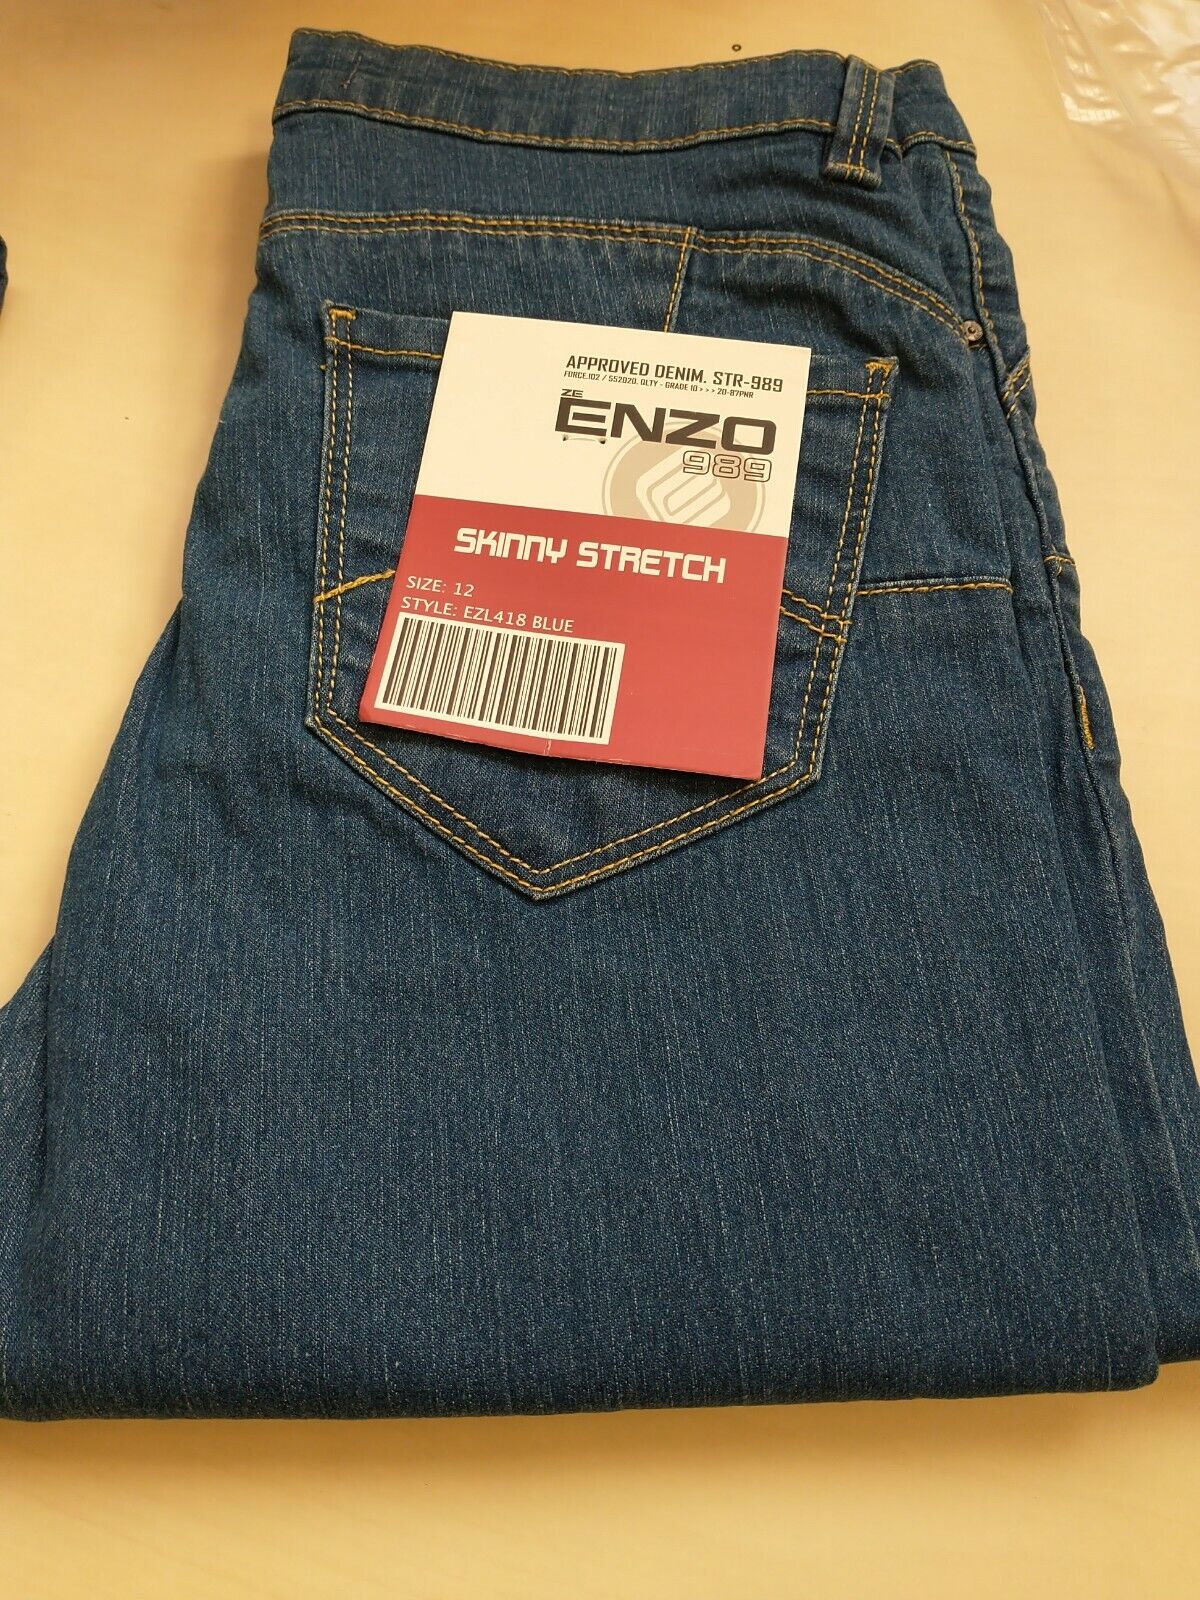 Enzo 989 Skinny Stretch Jeans Size 12 BNWT Ref MW6